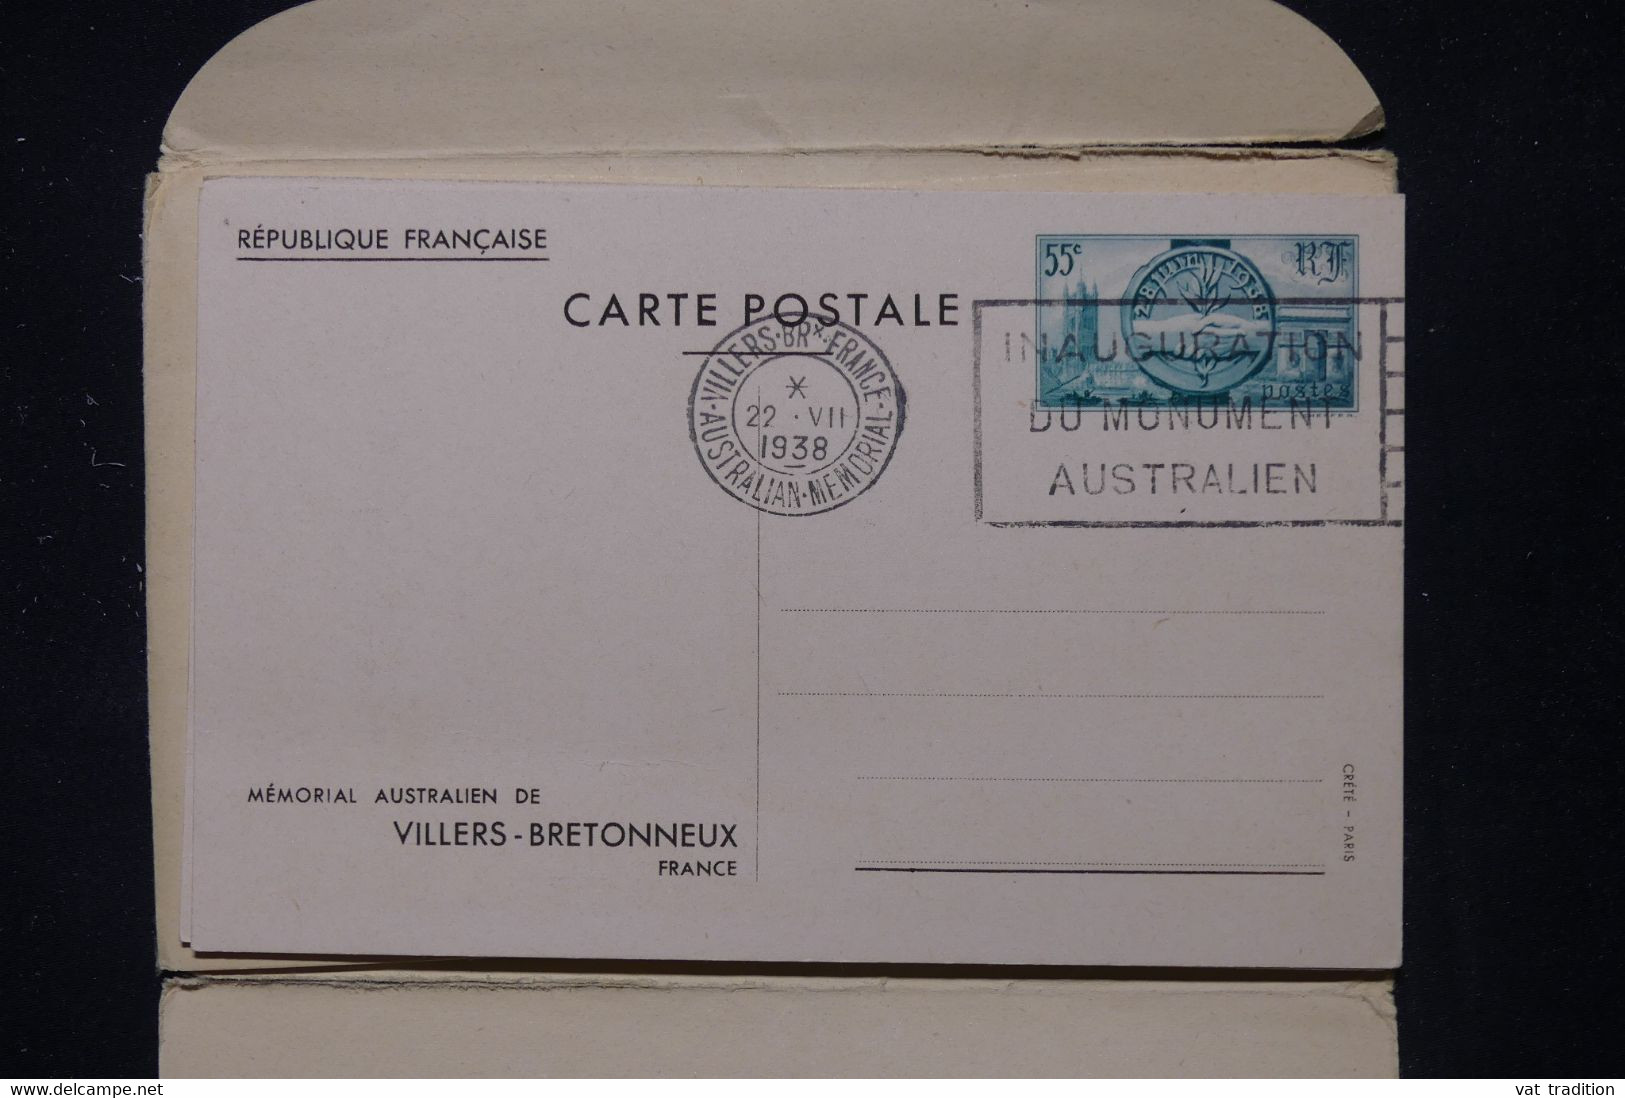 FRANCE -Pochette avec entiers postaux oblitérés du Mémorial Australien de  Villers Bretonneux en 1938 - L 111177